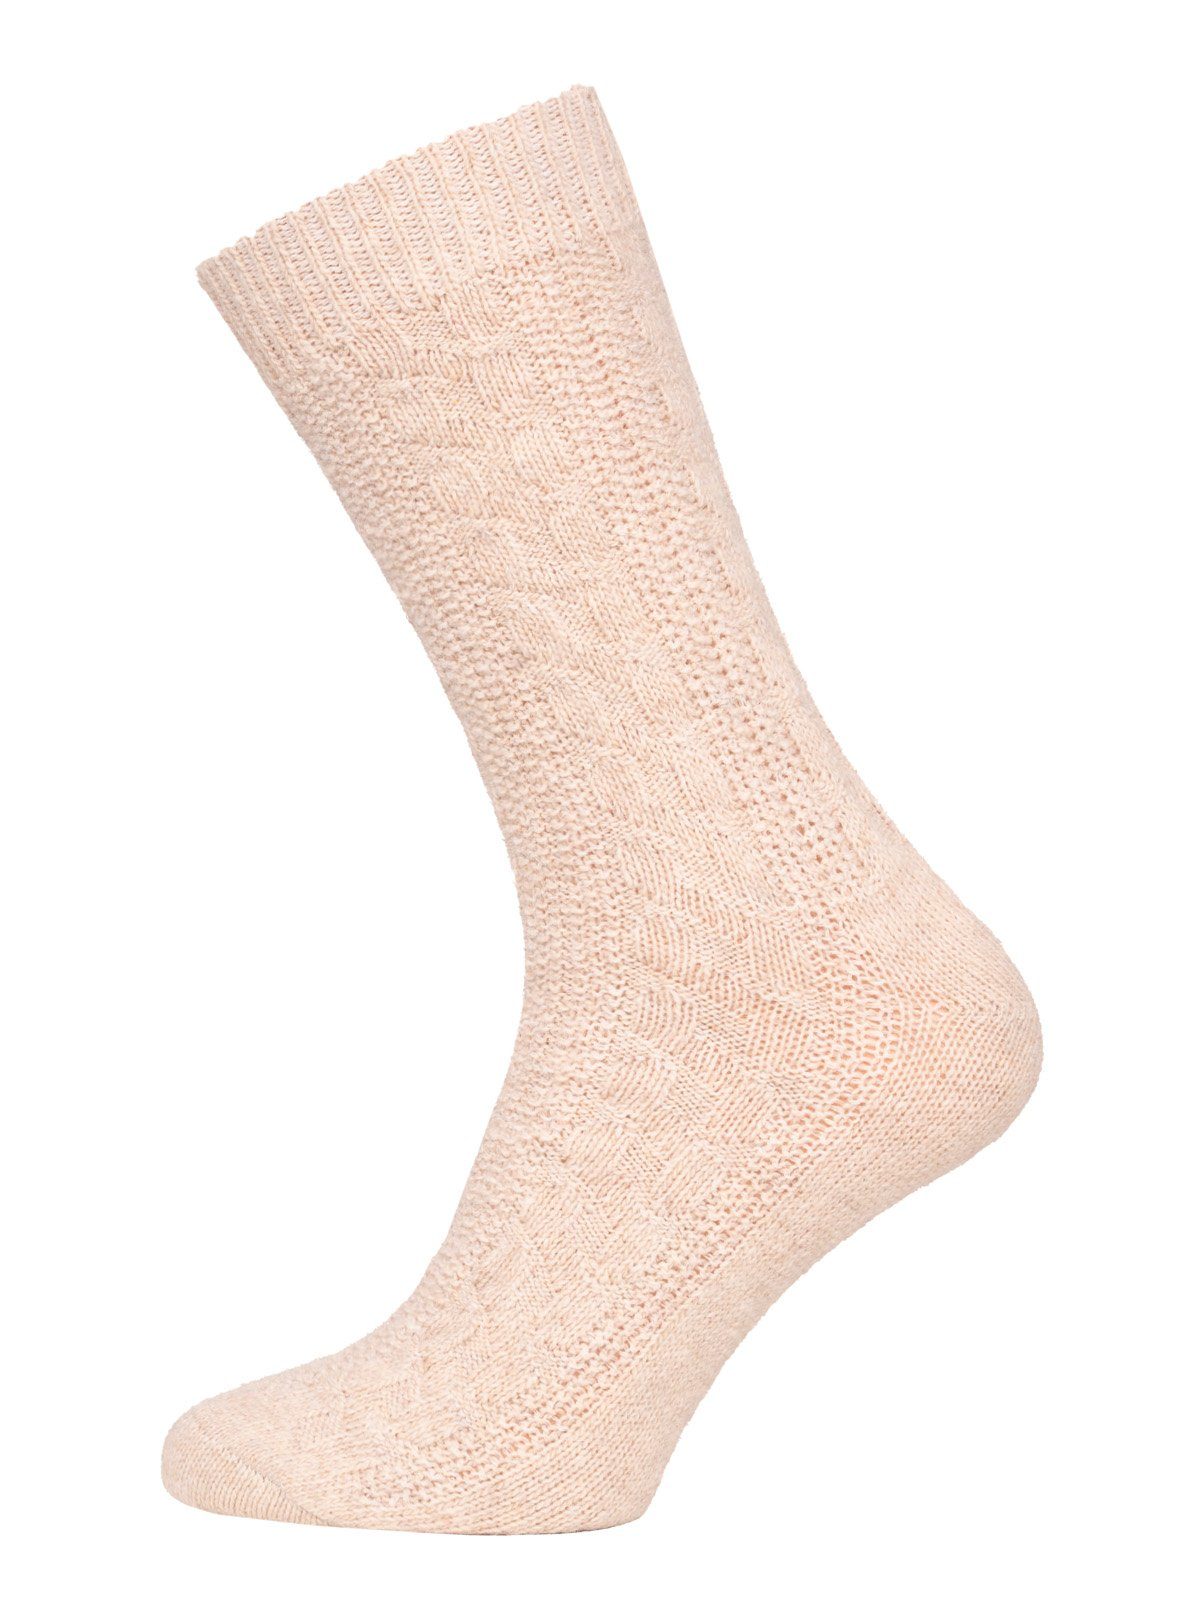 HomeOfSocks Socken 70% Lammwolle Socks Zopfmuster Wollsocken Extra Warm (Paar, 1 Paar) Feine und strapazierfähige Lambswool Wollsocken Beige